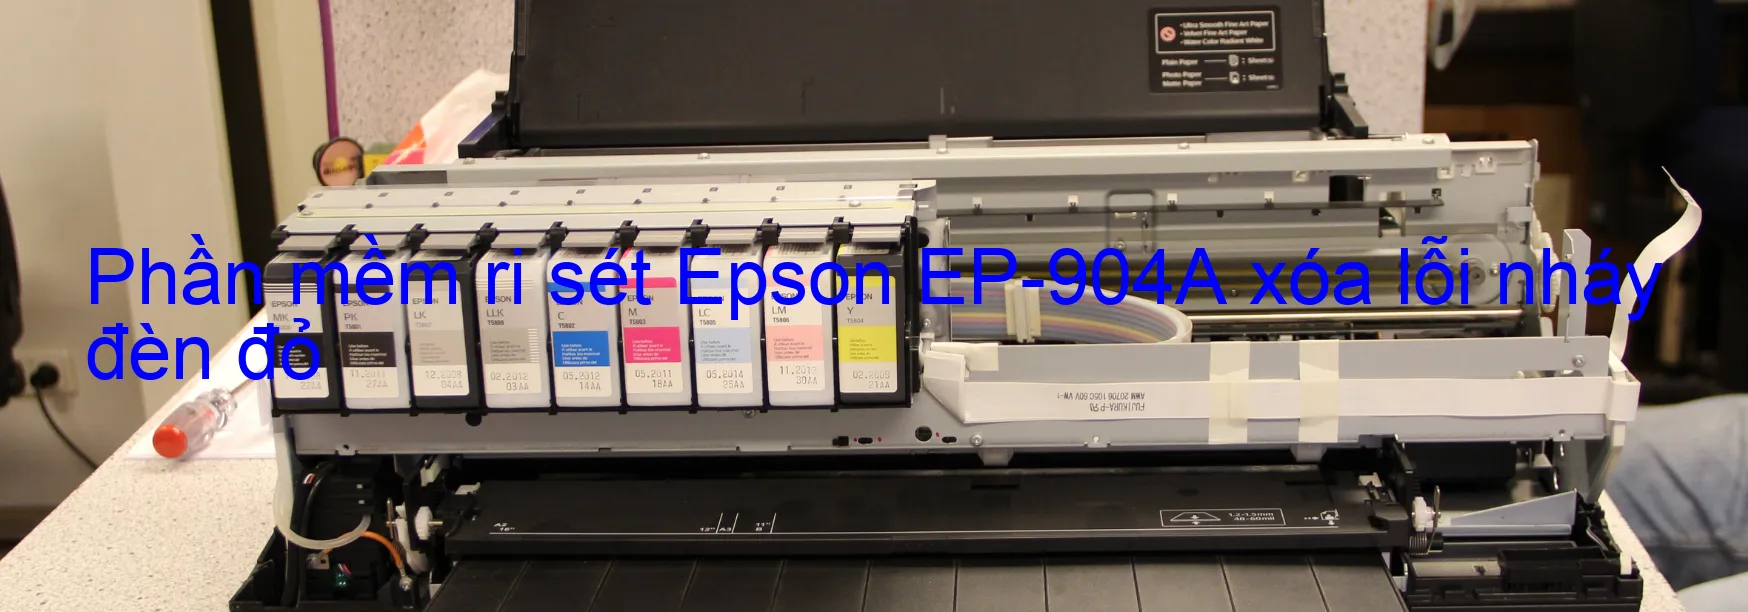 Phần mềm reset Epson EP-904A xóa lỗi nháy đèn đỏ